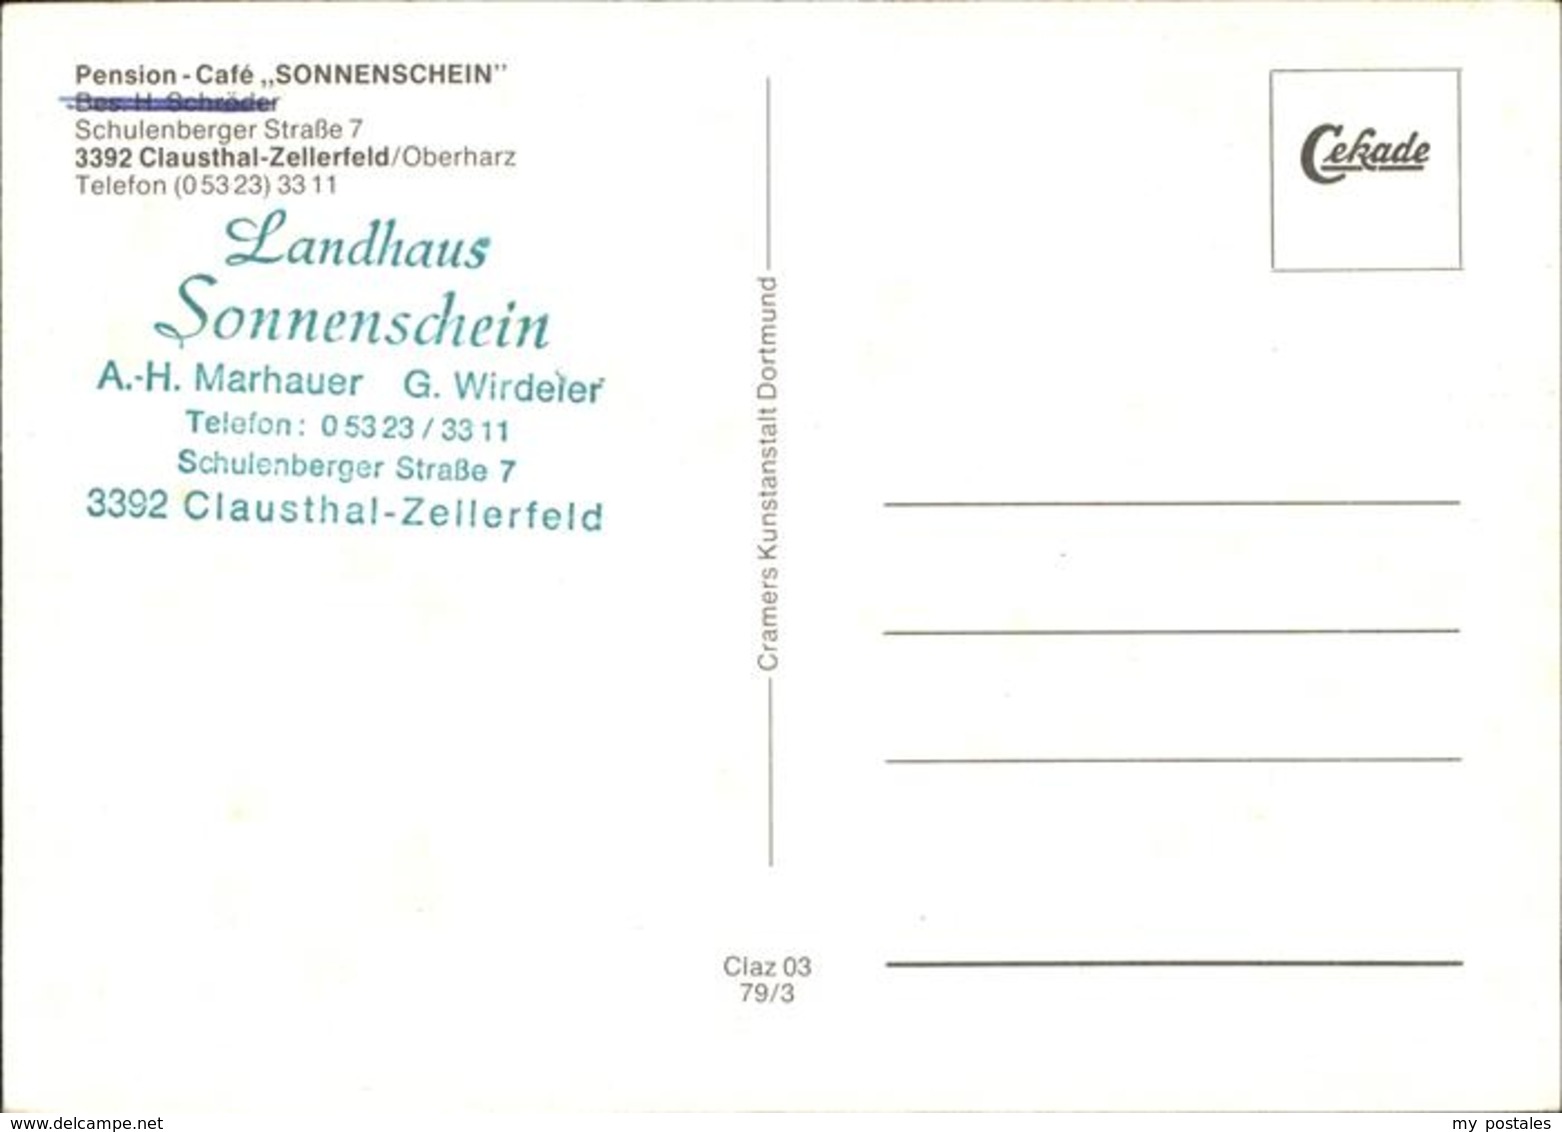 41238375 Clausthal-Zellerfeld Pension Cafe Sonnenschein Marhauer Wirdeier Winter - Clausthal-Zellerfeld